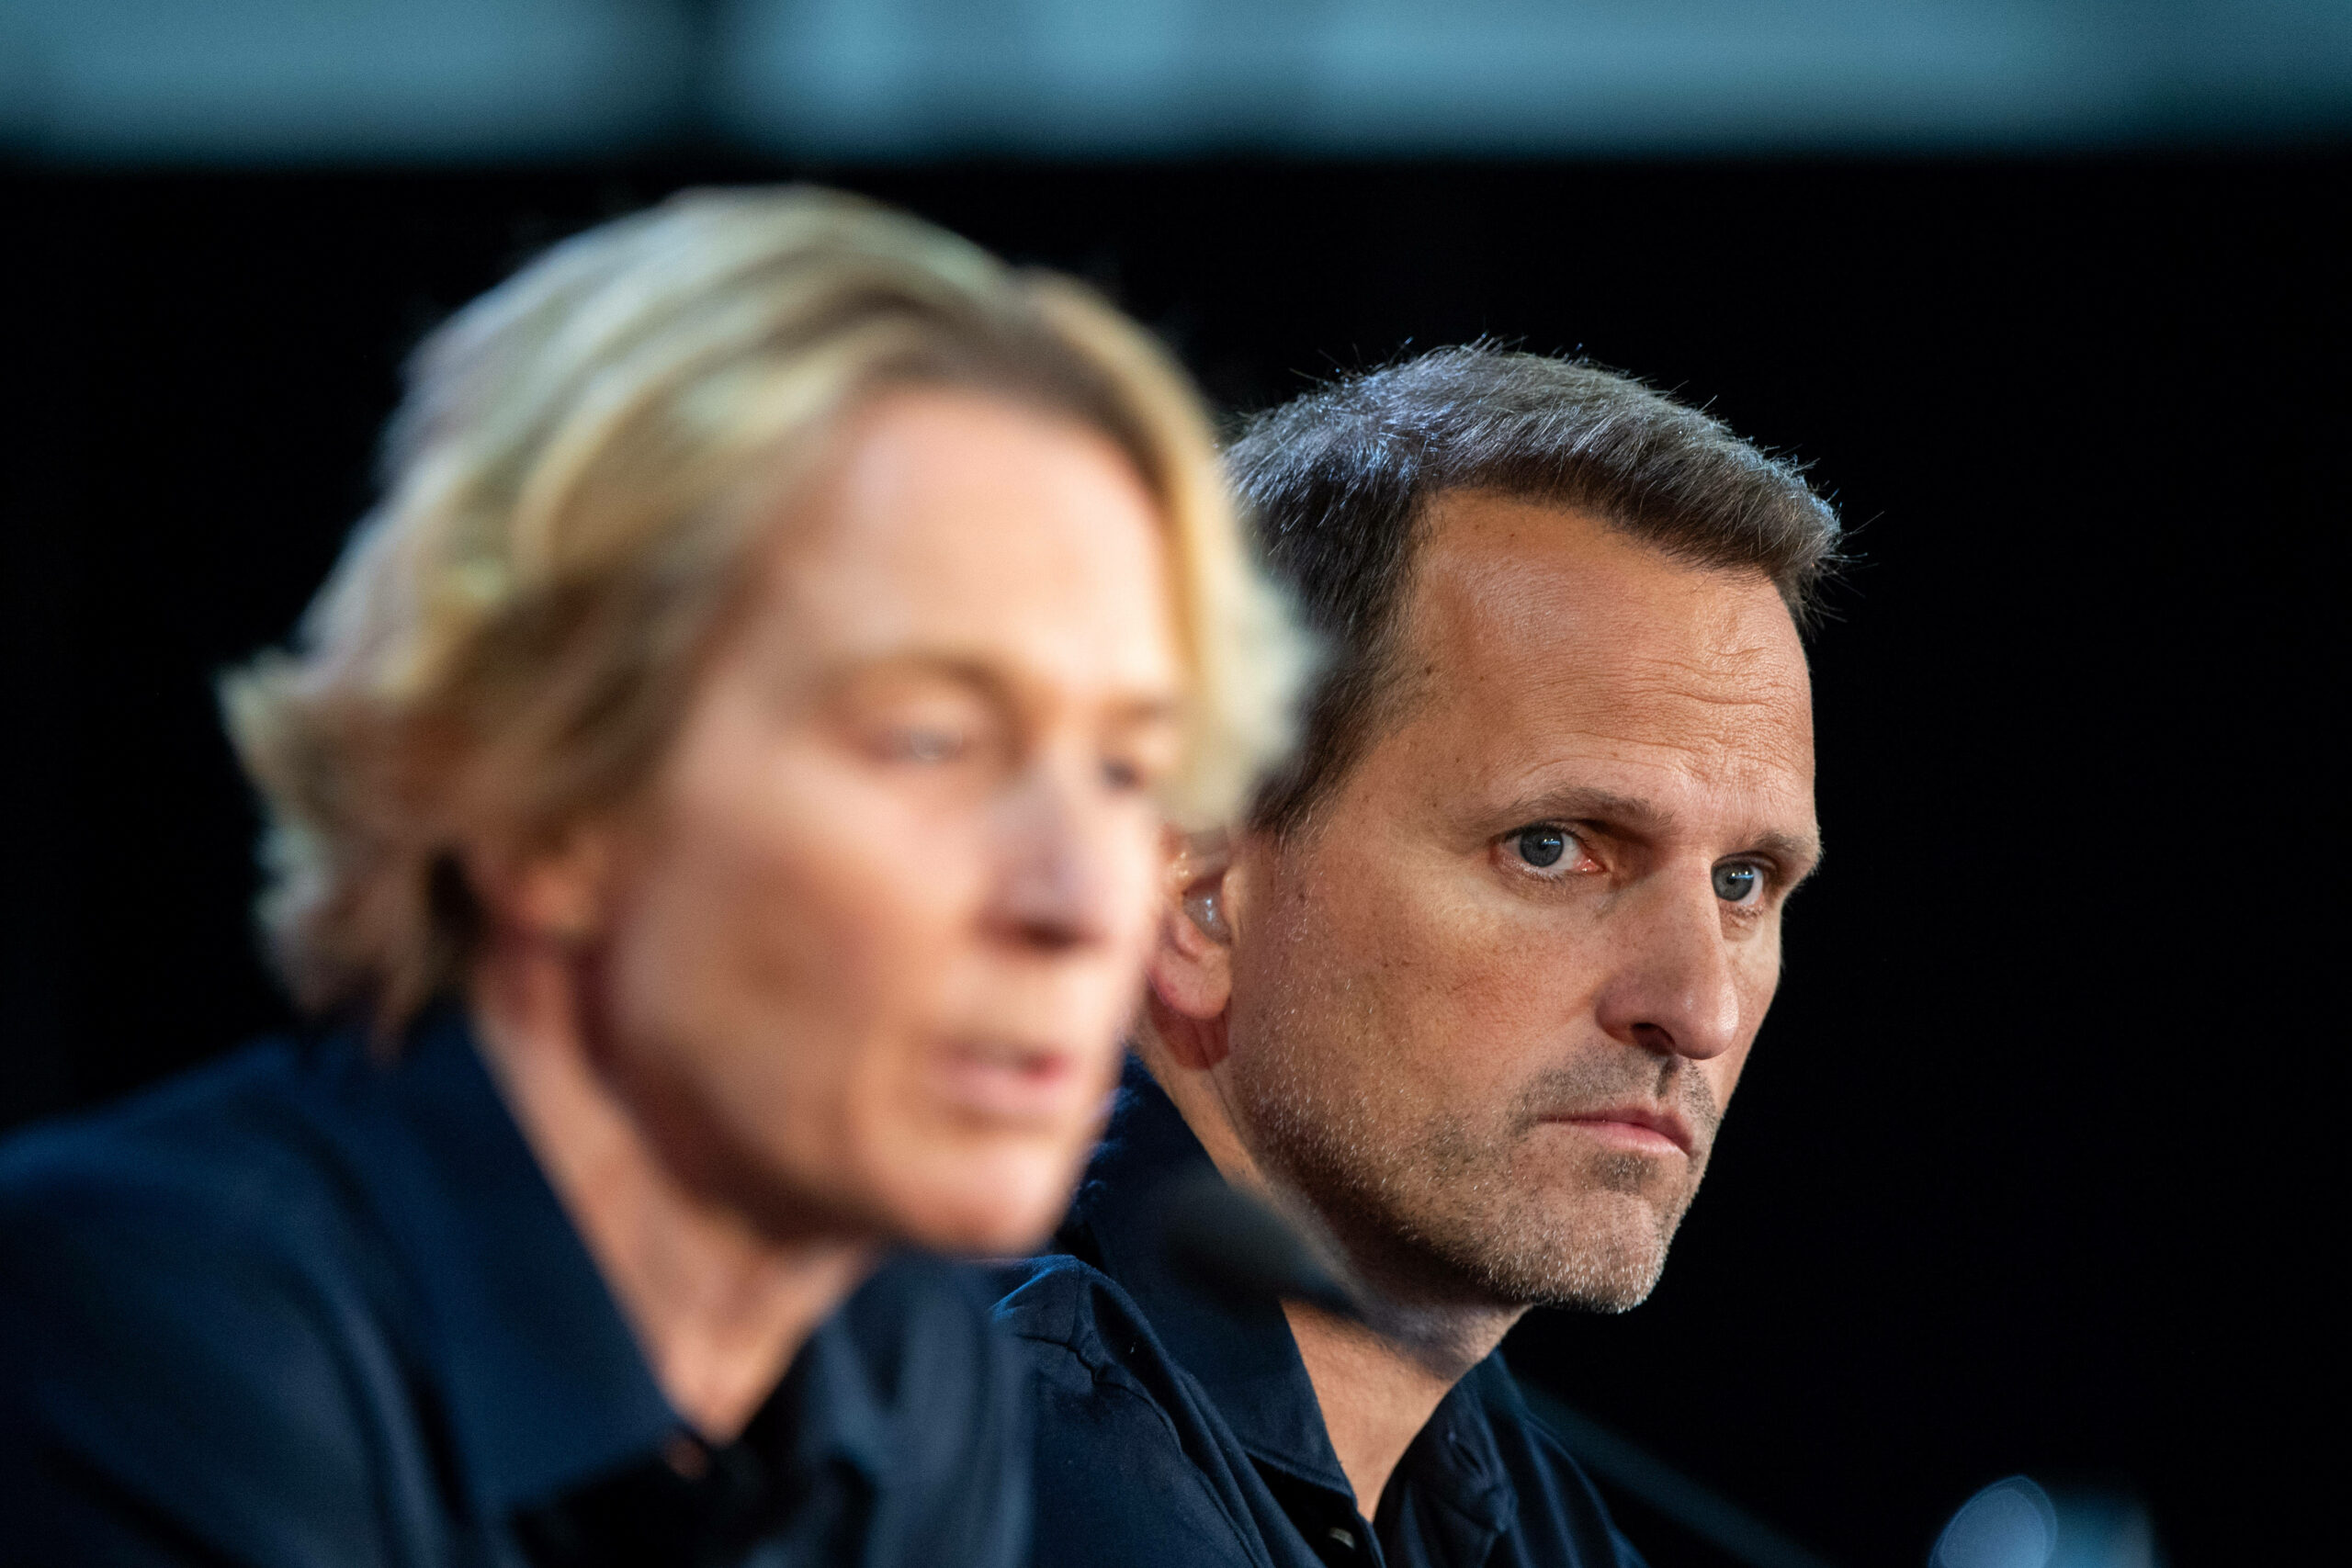 Der Sportliche Leiter der deutschen Nationalmannschaften Joti Chatzialexiou und die Nationaltrainerin Martina Voss-Tecklenburg stellen sich auf einer Pressekonferenz Fragen zum deutschen Ausscheiden bei der WM